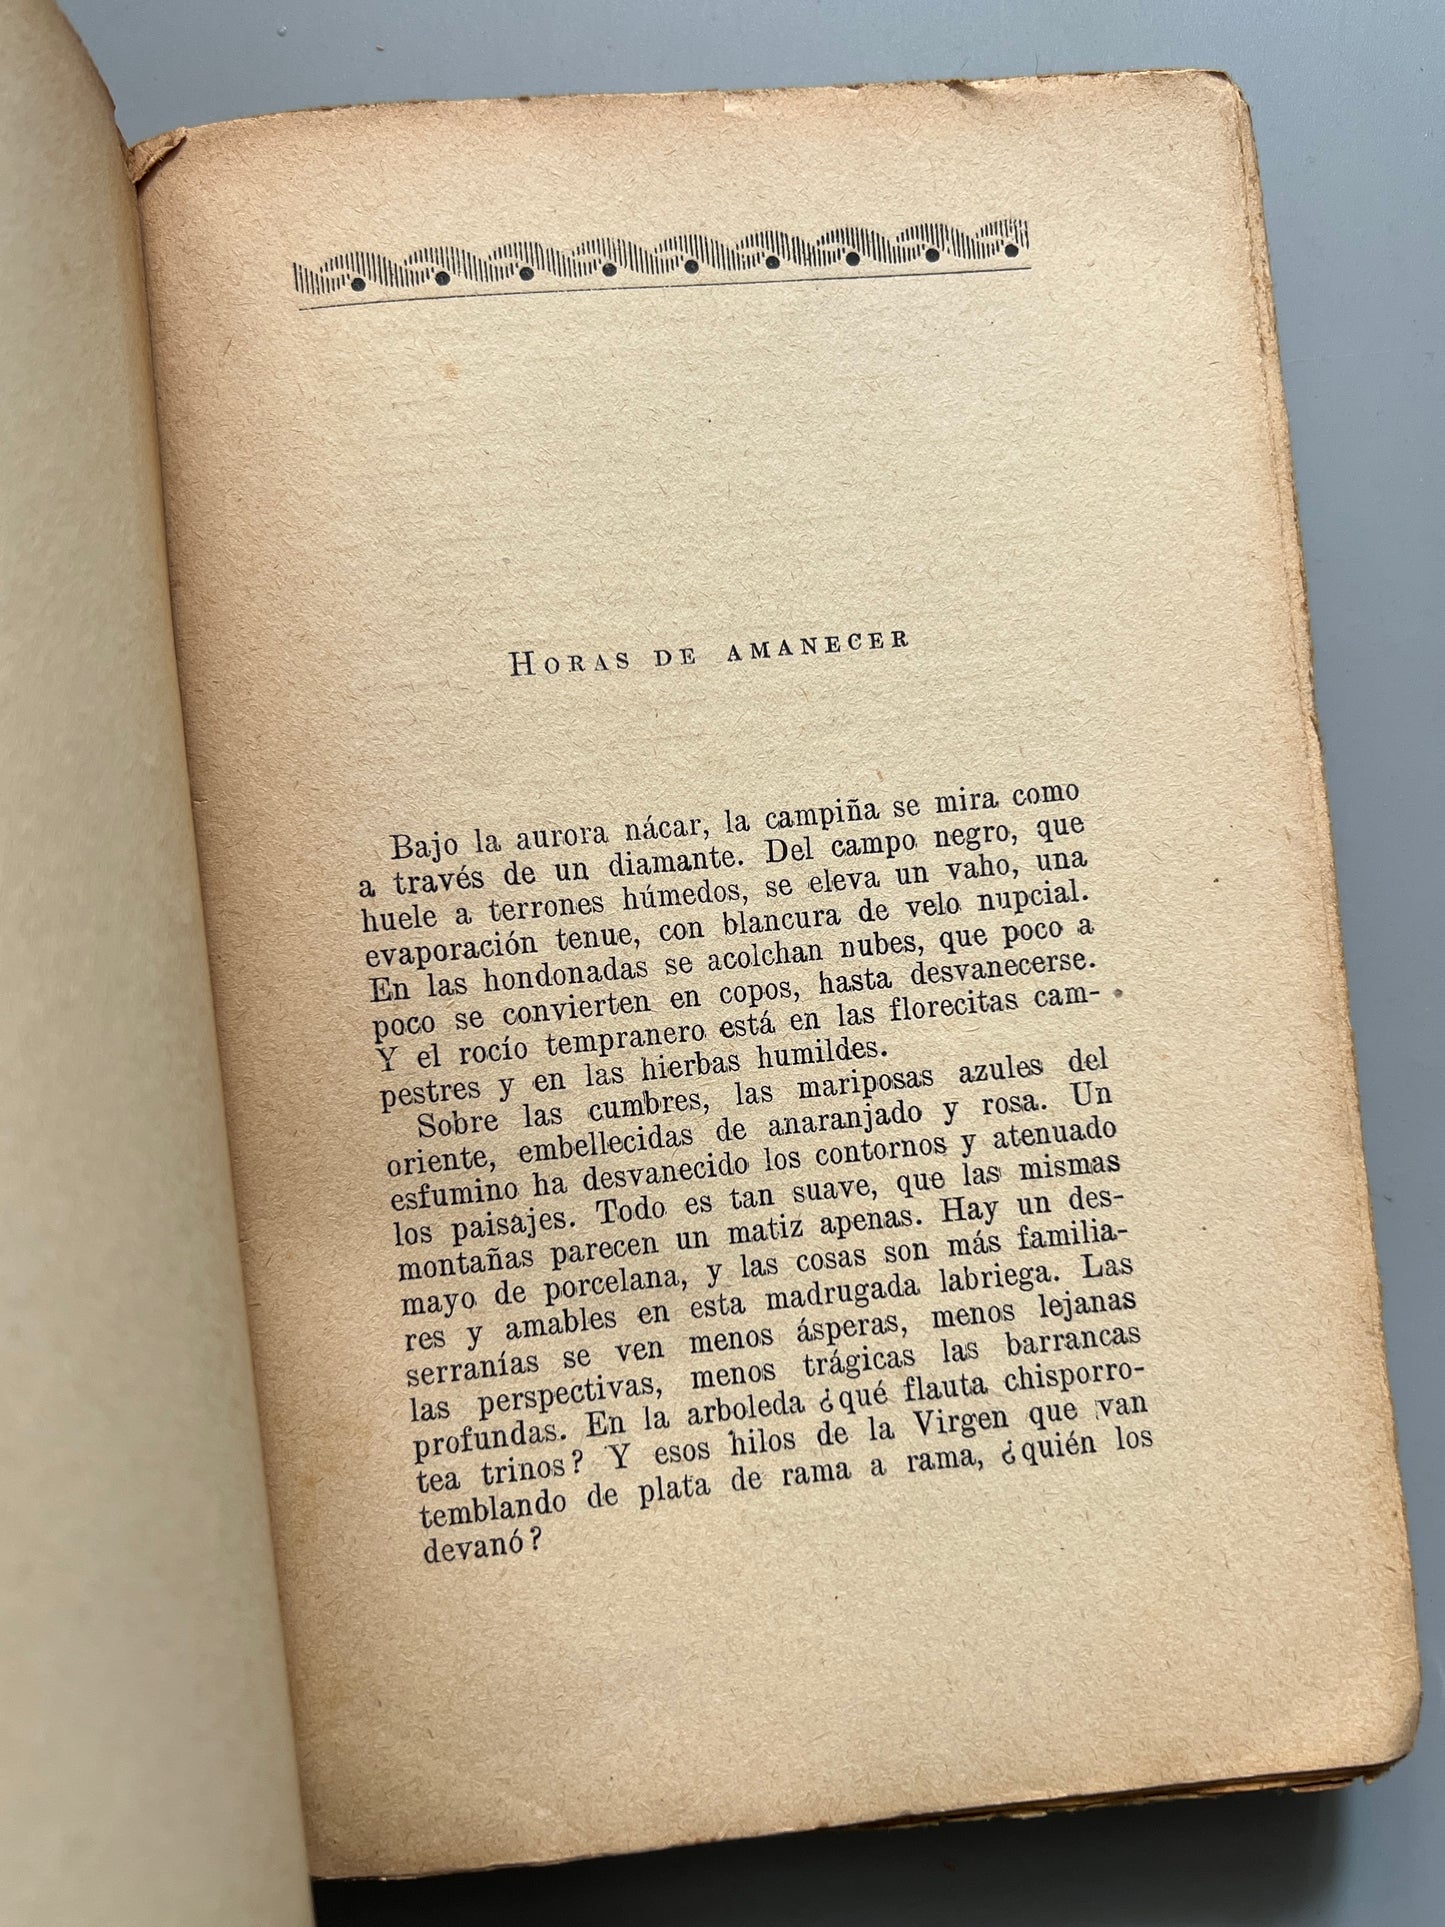 Tierra de sol y de montaña, José Rodríguez Cerna (firmado y dedicado a Miguel Rasch Isla) - Editorial Bauza, ca. 1930